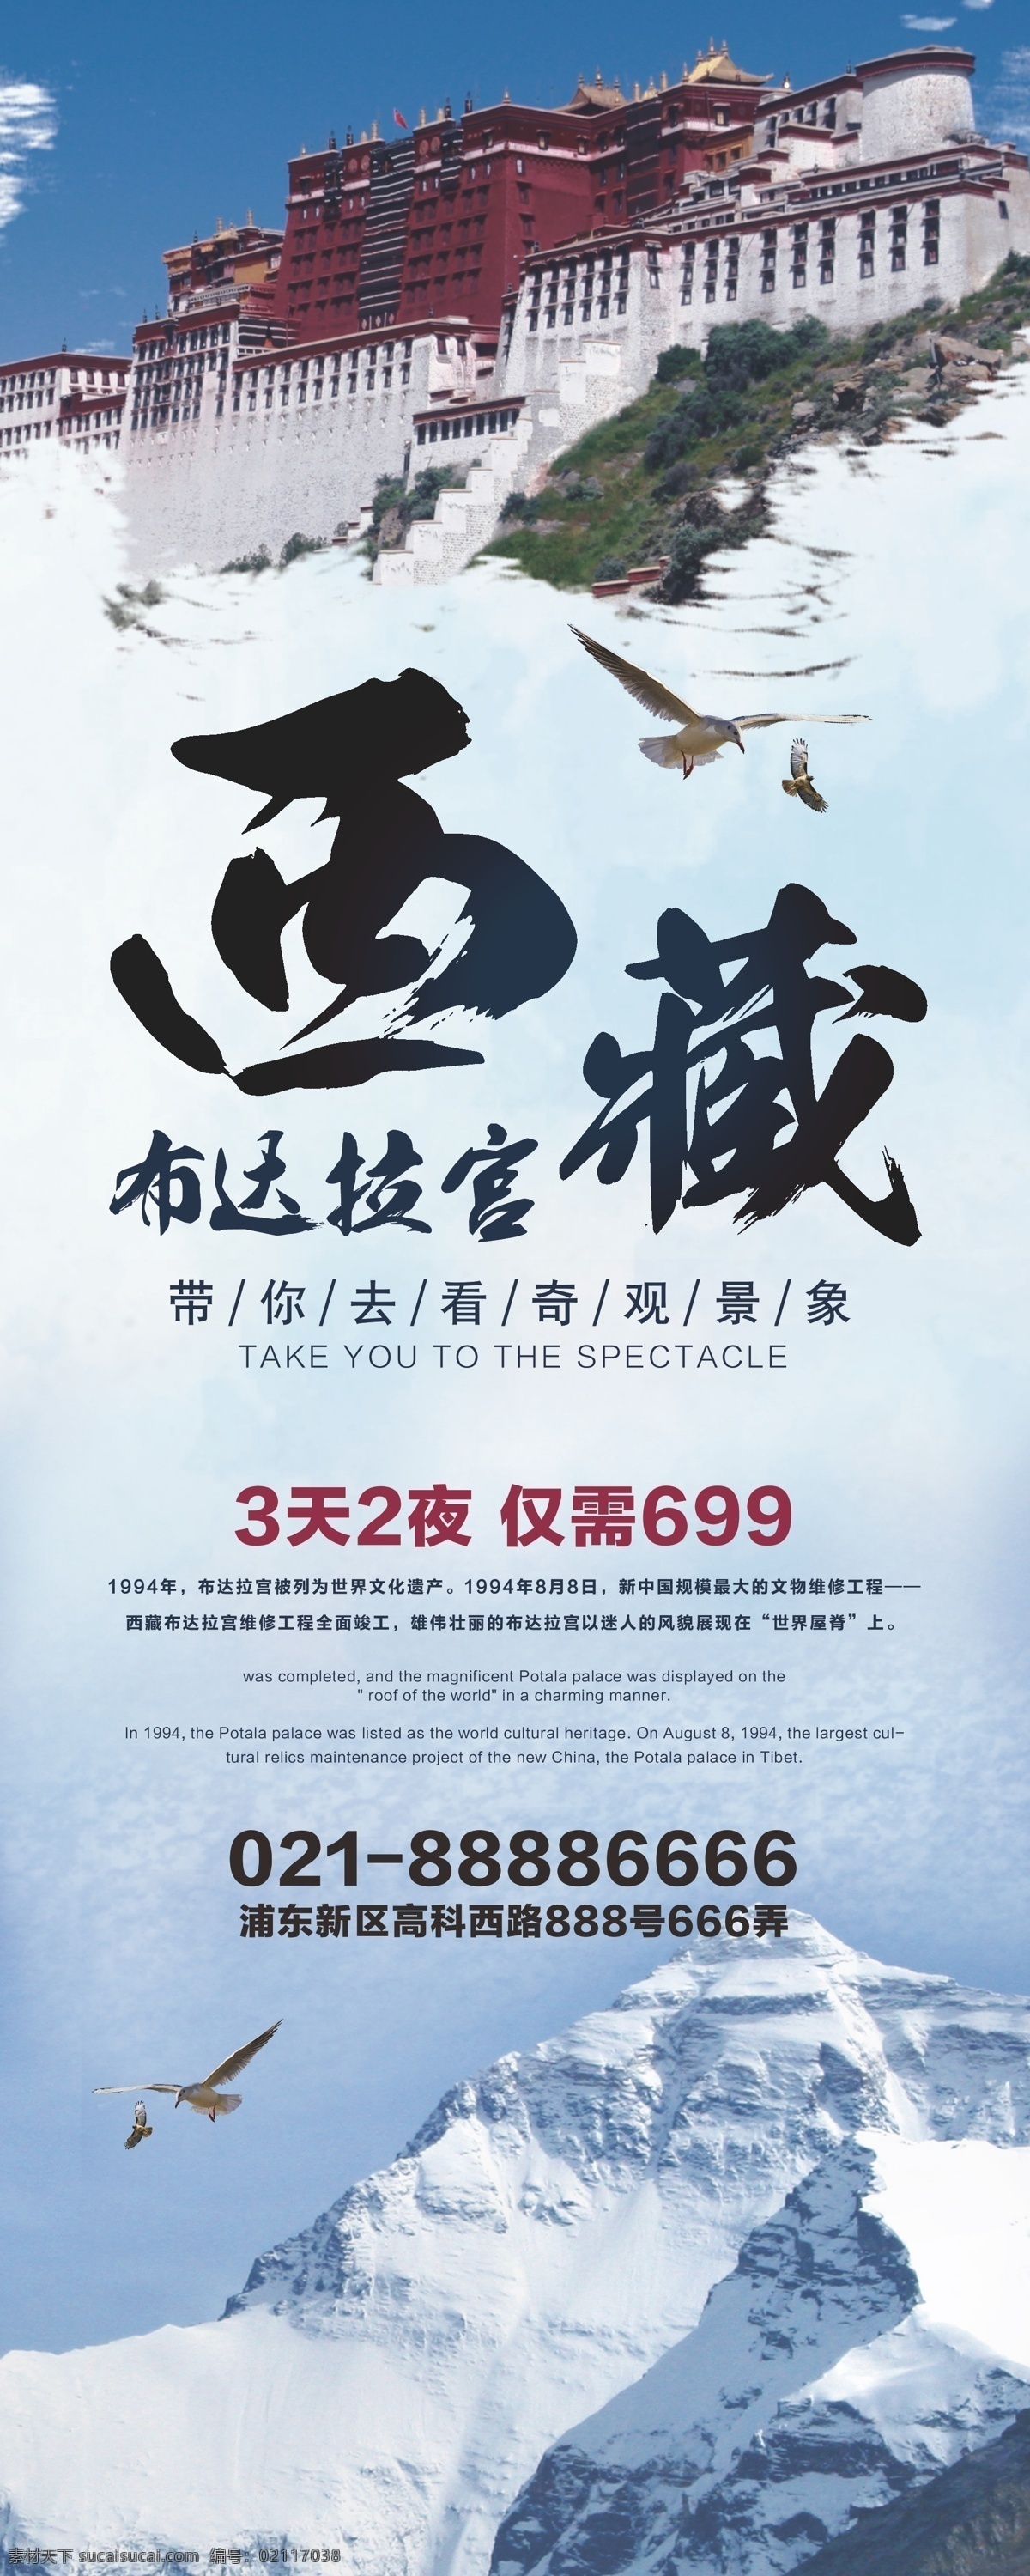 浅蓝色 中国 风 西藏 布达拉宫 旅游 展架 中国风 奇观景象 雪山 布达拉宫建筑 3天2夜游